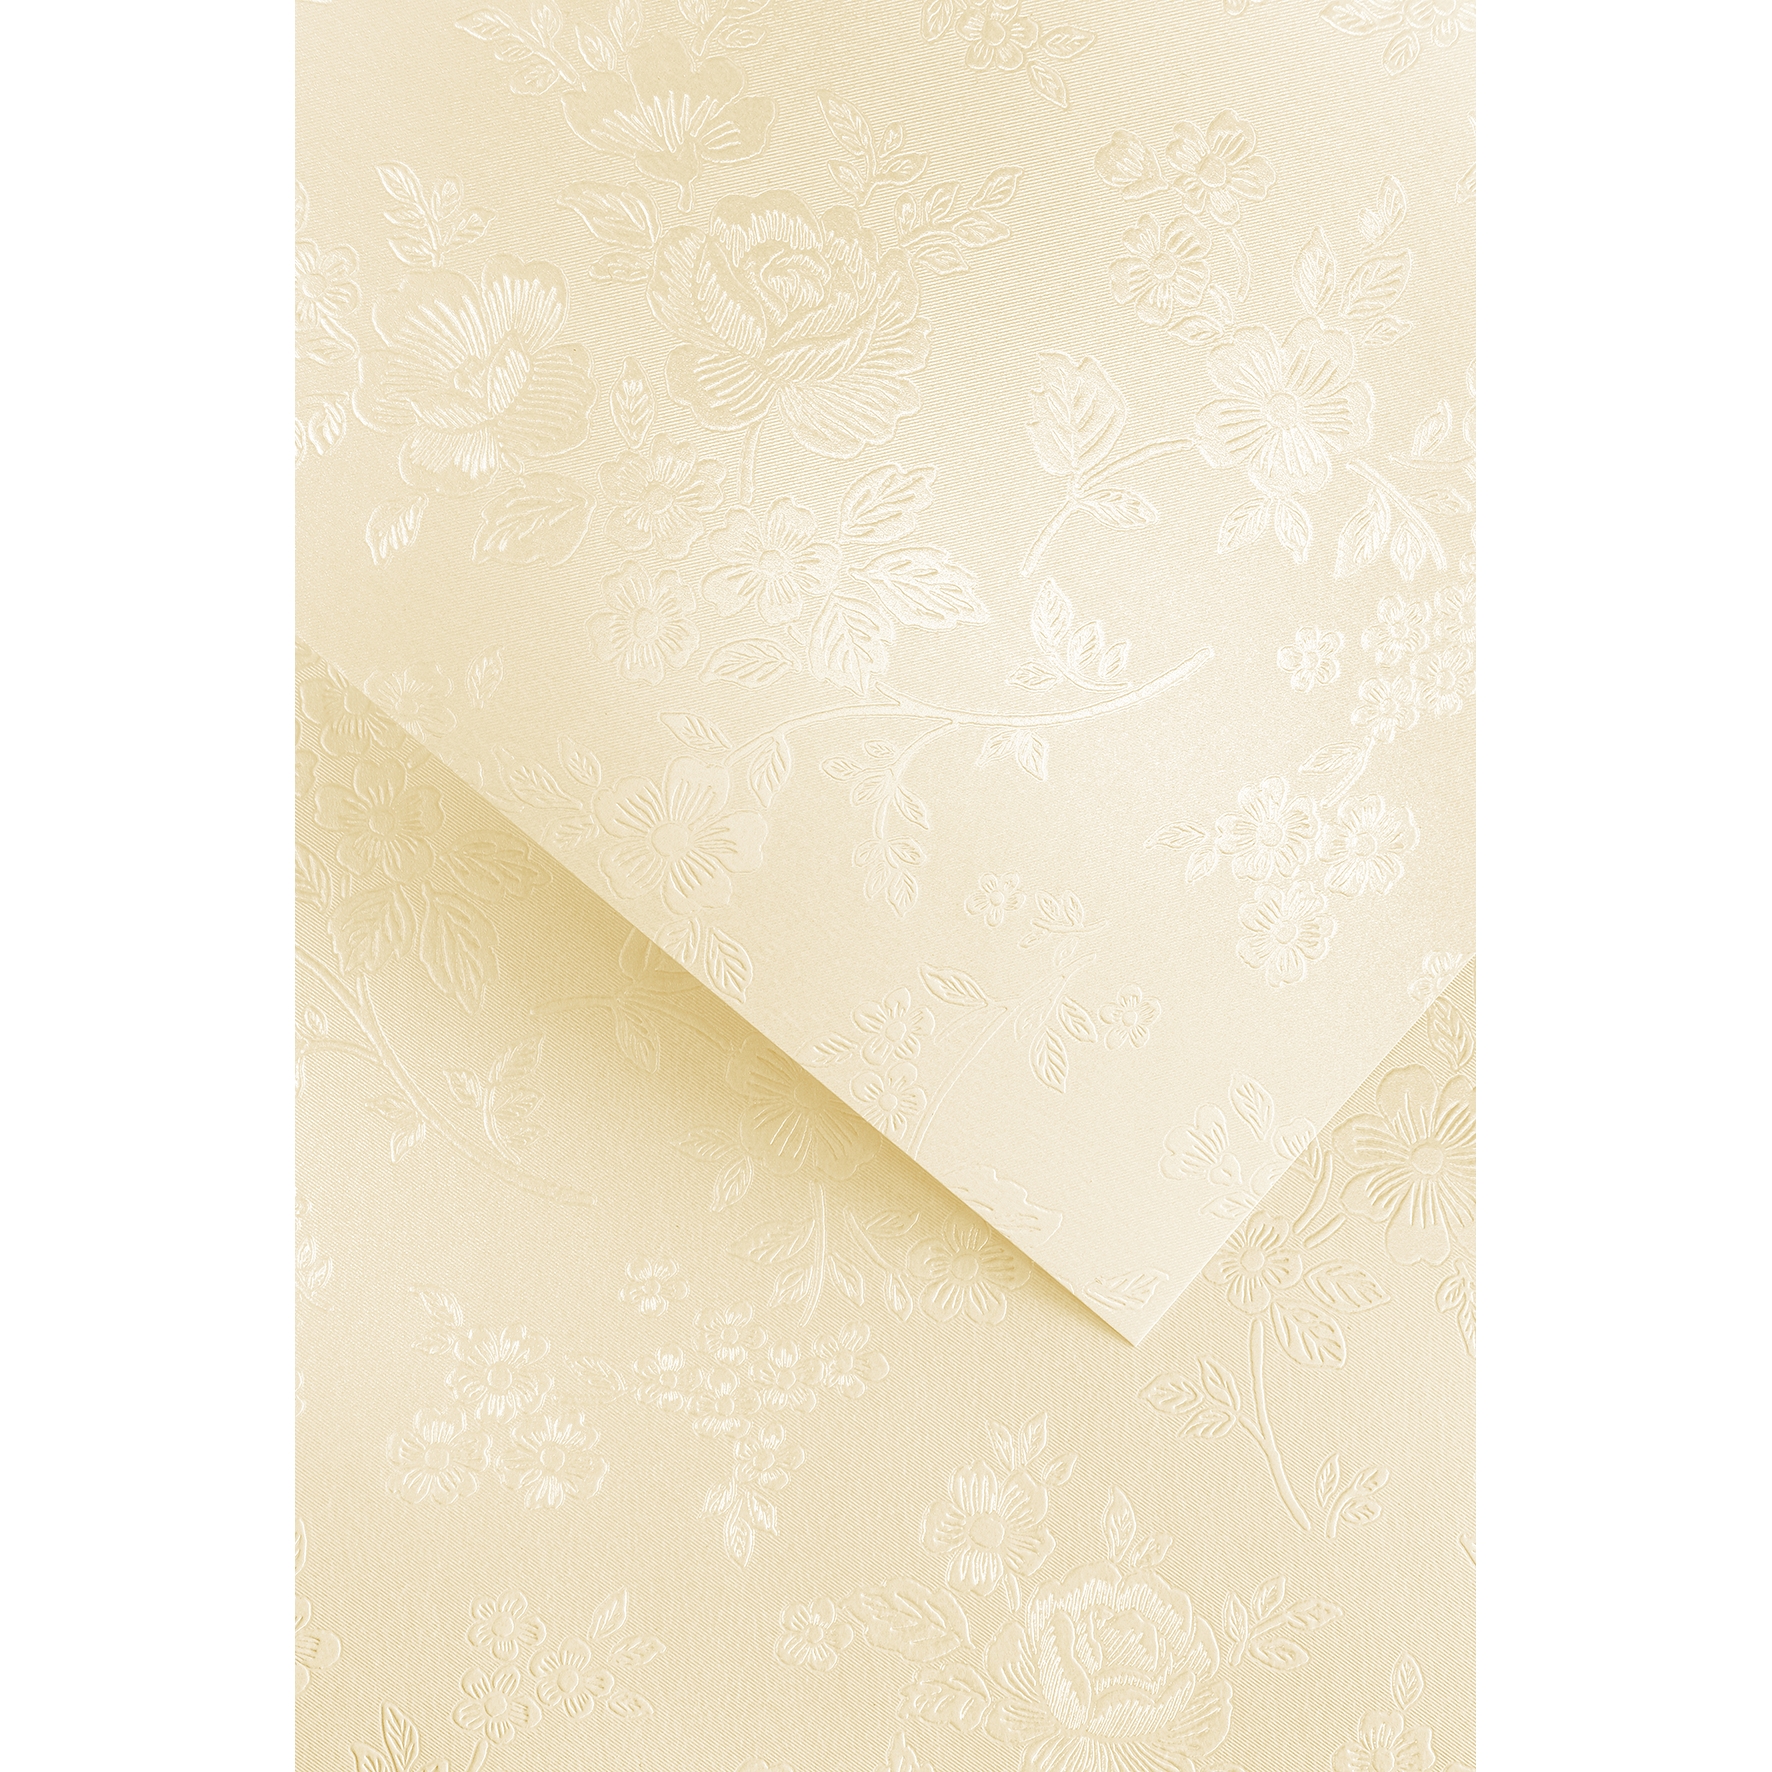 Ozdobný papír Floral, ivory, 220g, 20ks